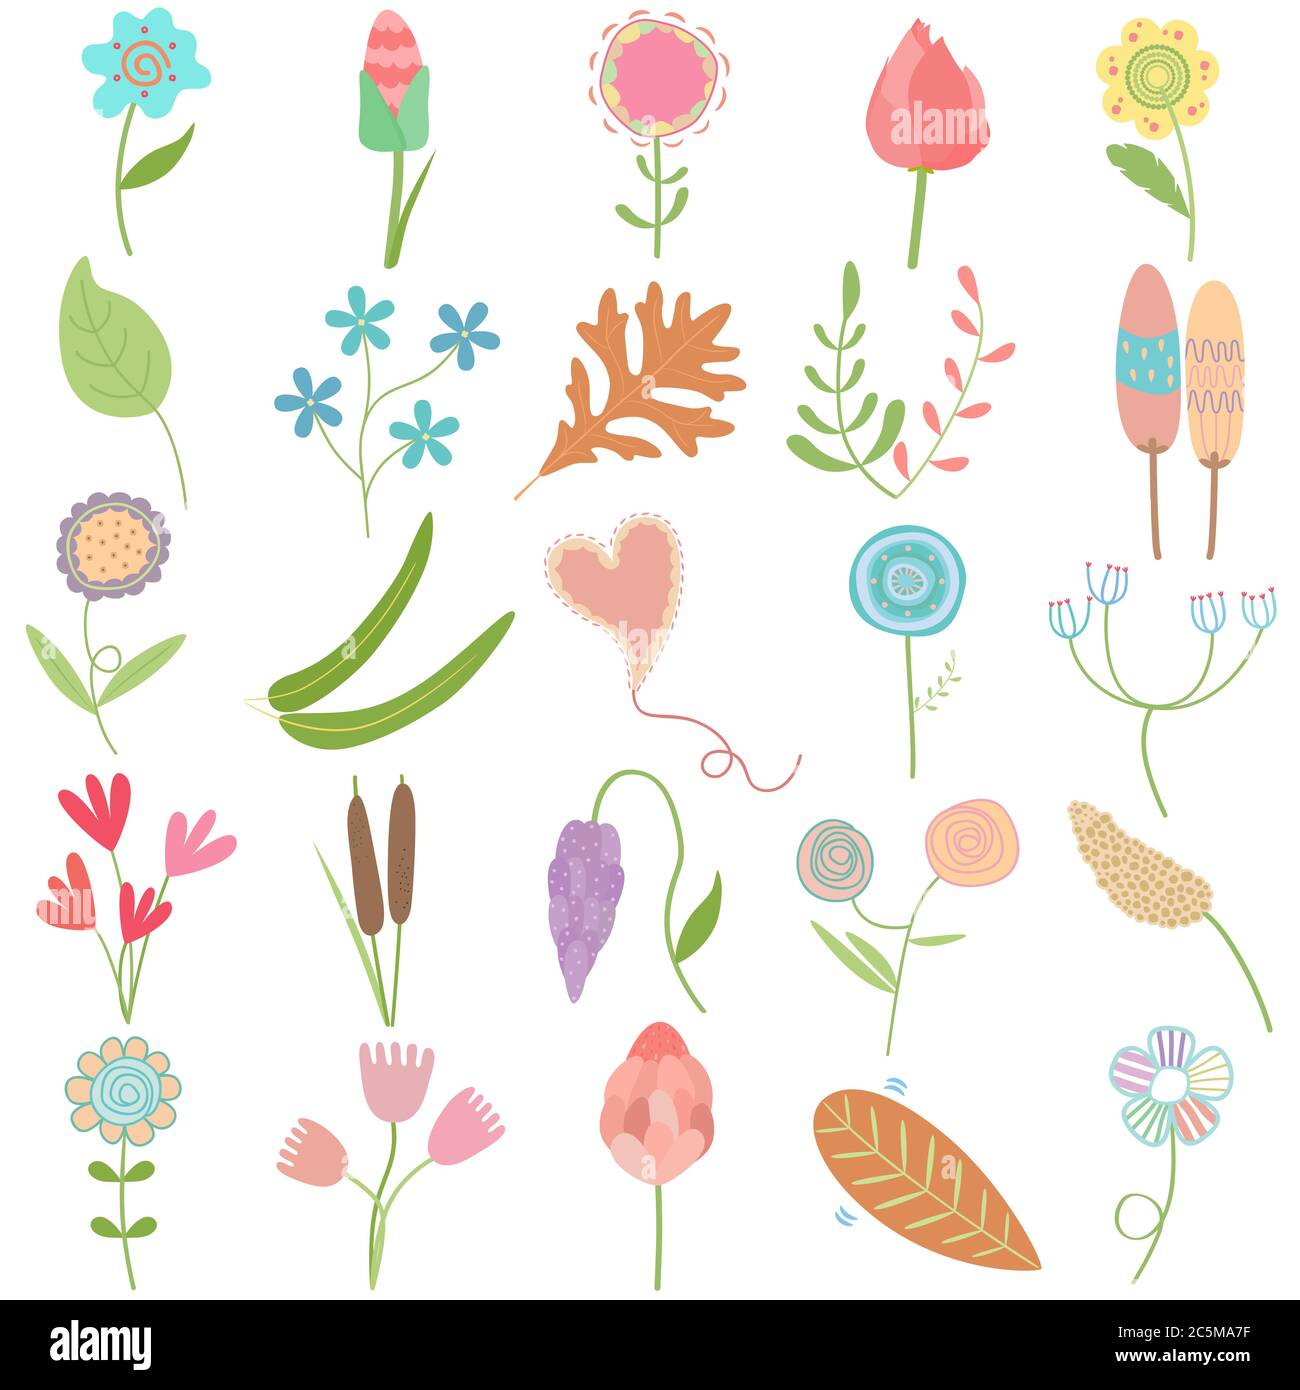 Feuille de fleur dessinée à la main pastel, adorable motif vectoriel ensemble de caniche comme motif graphique éléments floraux Illustration de Vecteur